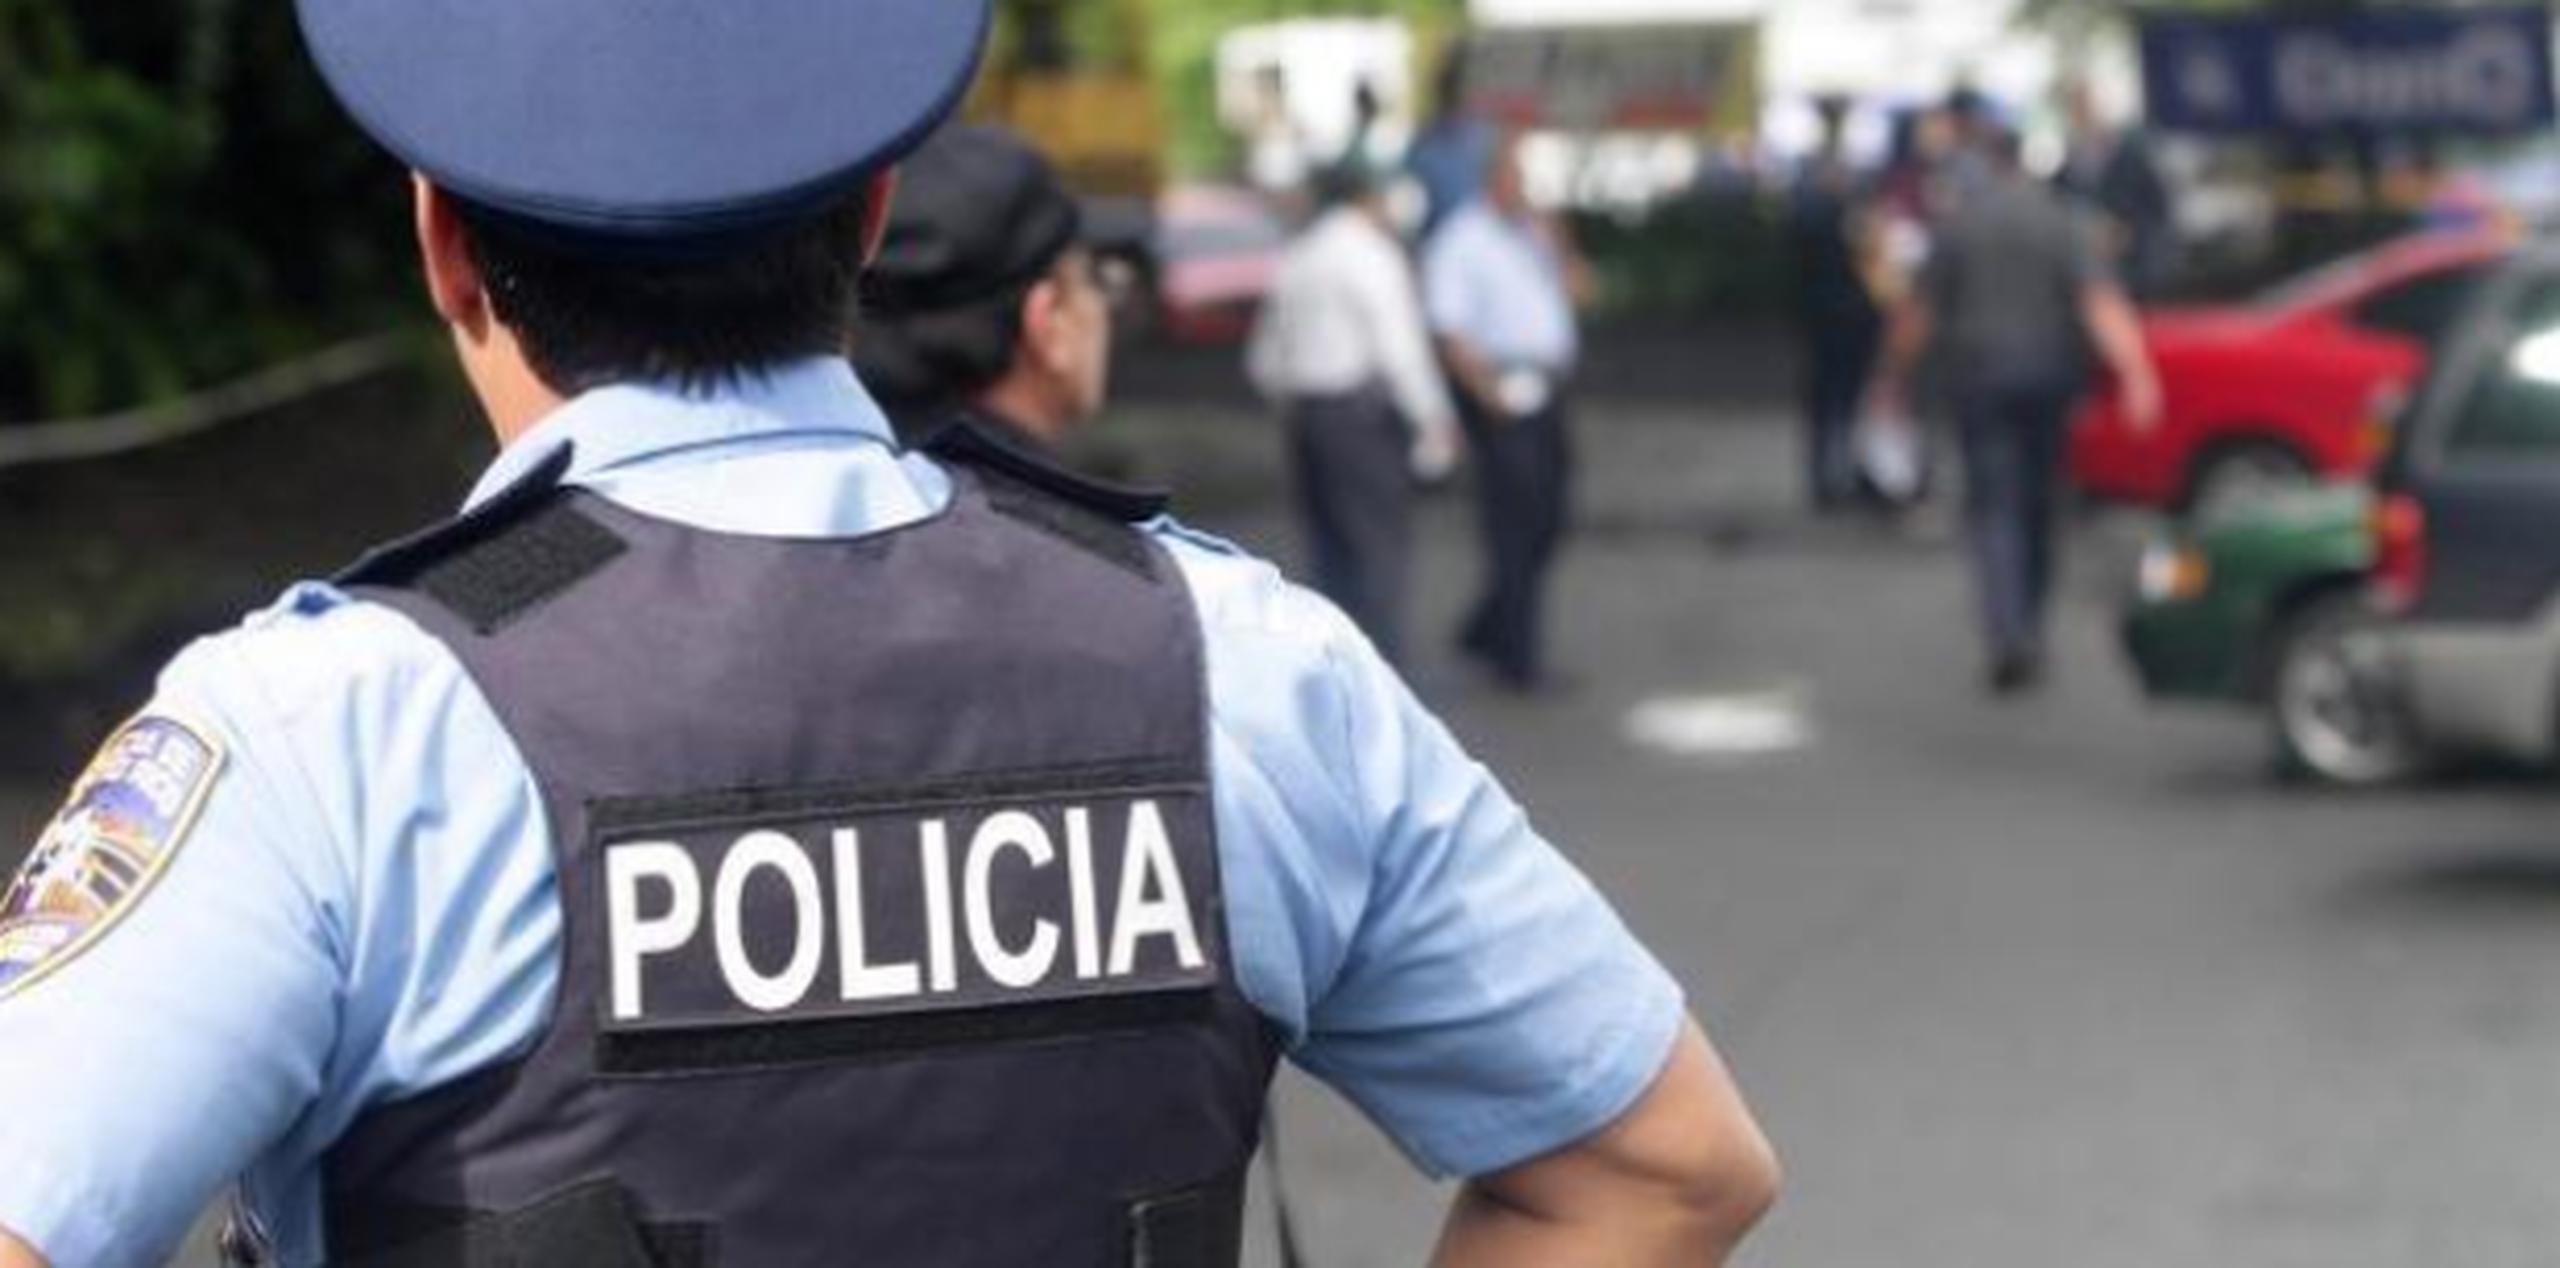 Se alega que el imputado asaltó a mano armada la Lechonera Reyes, localizada en el barrio Puente en Camuy, despojando a su propietario de $100. (Archivo)